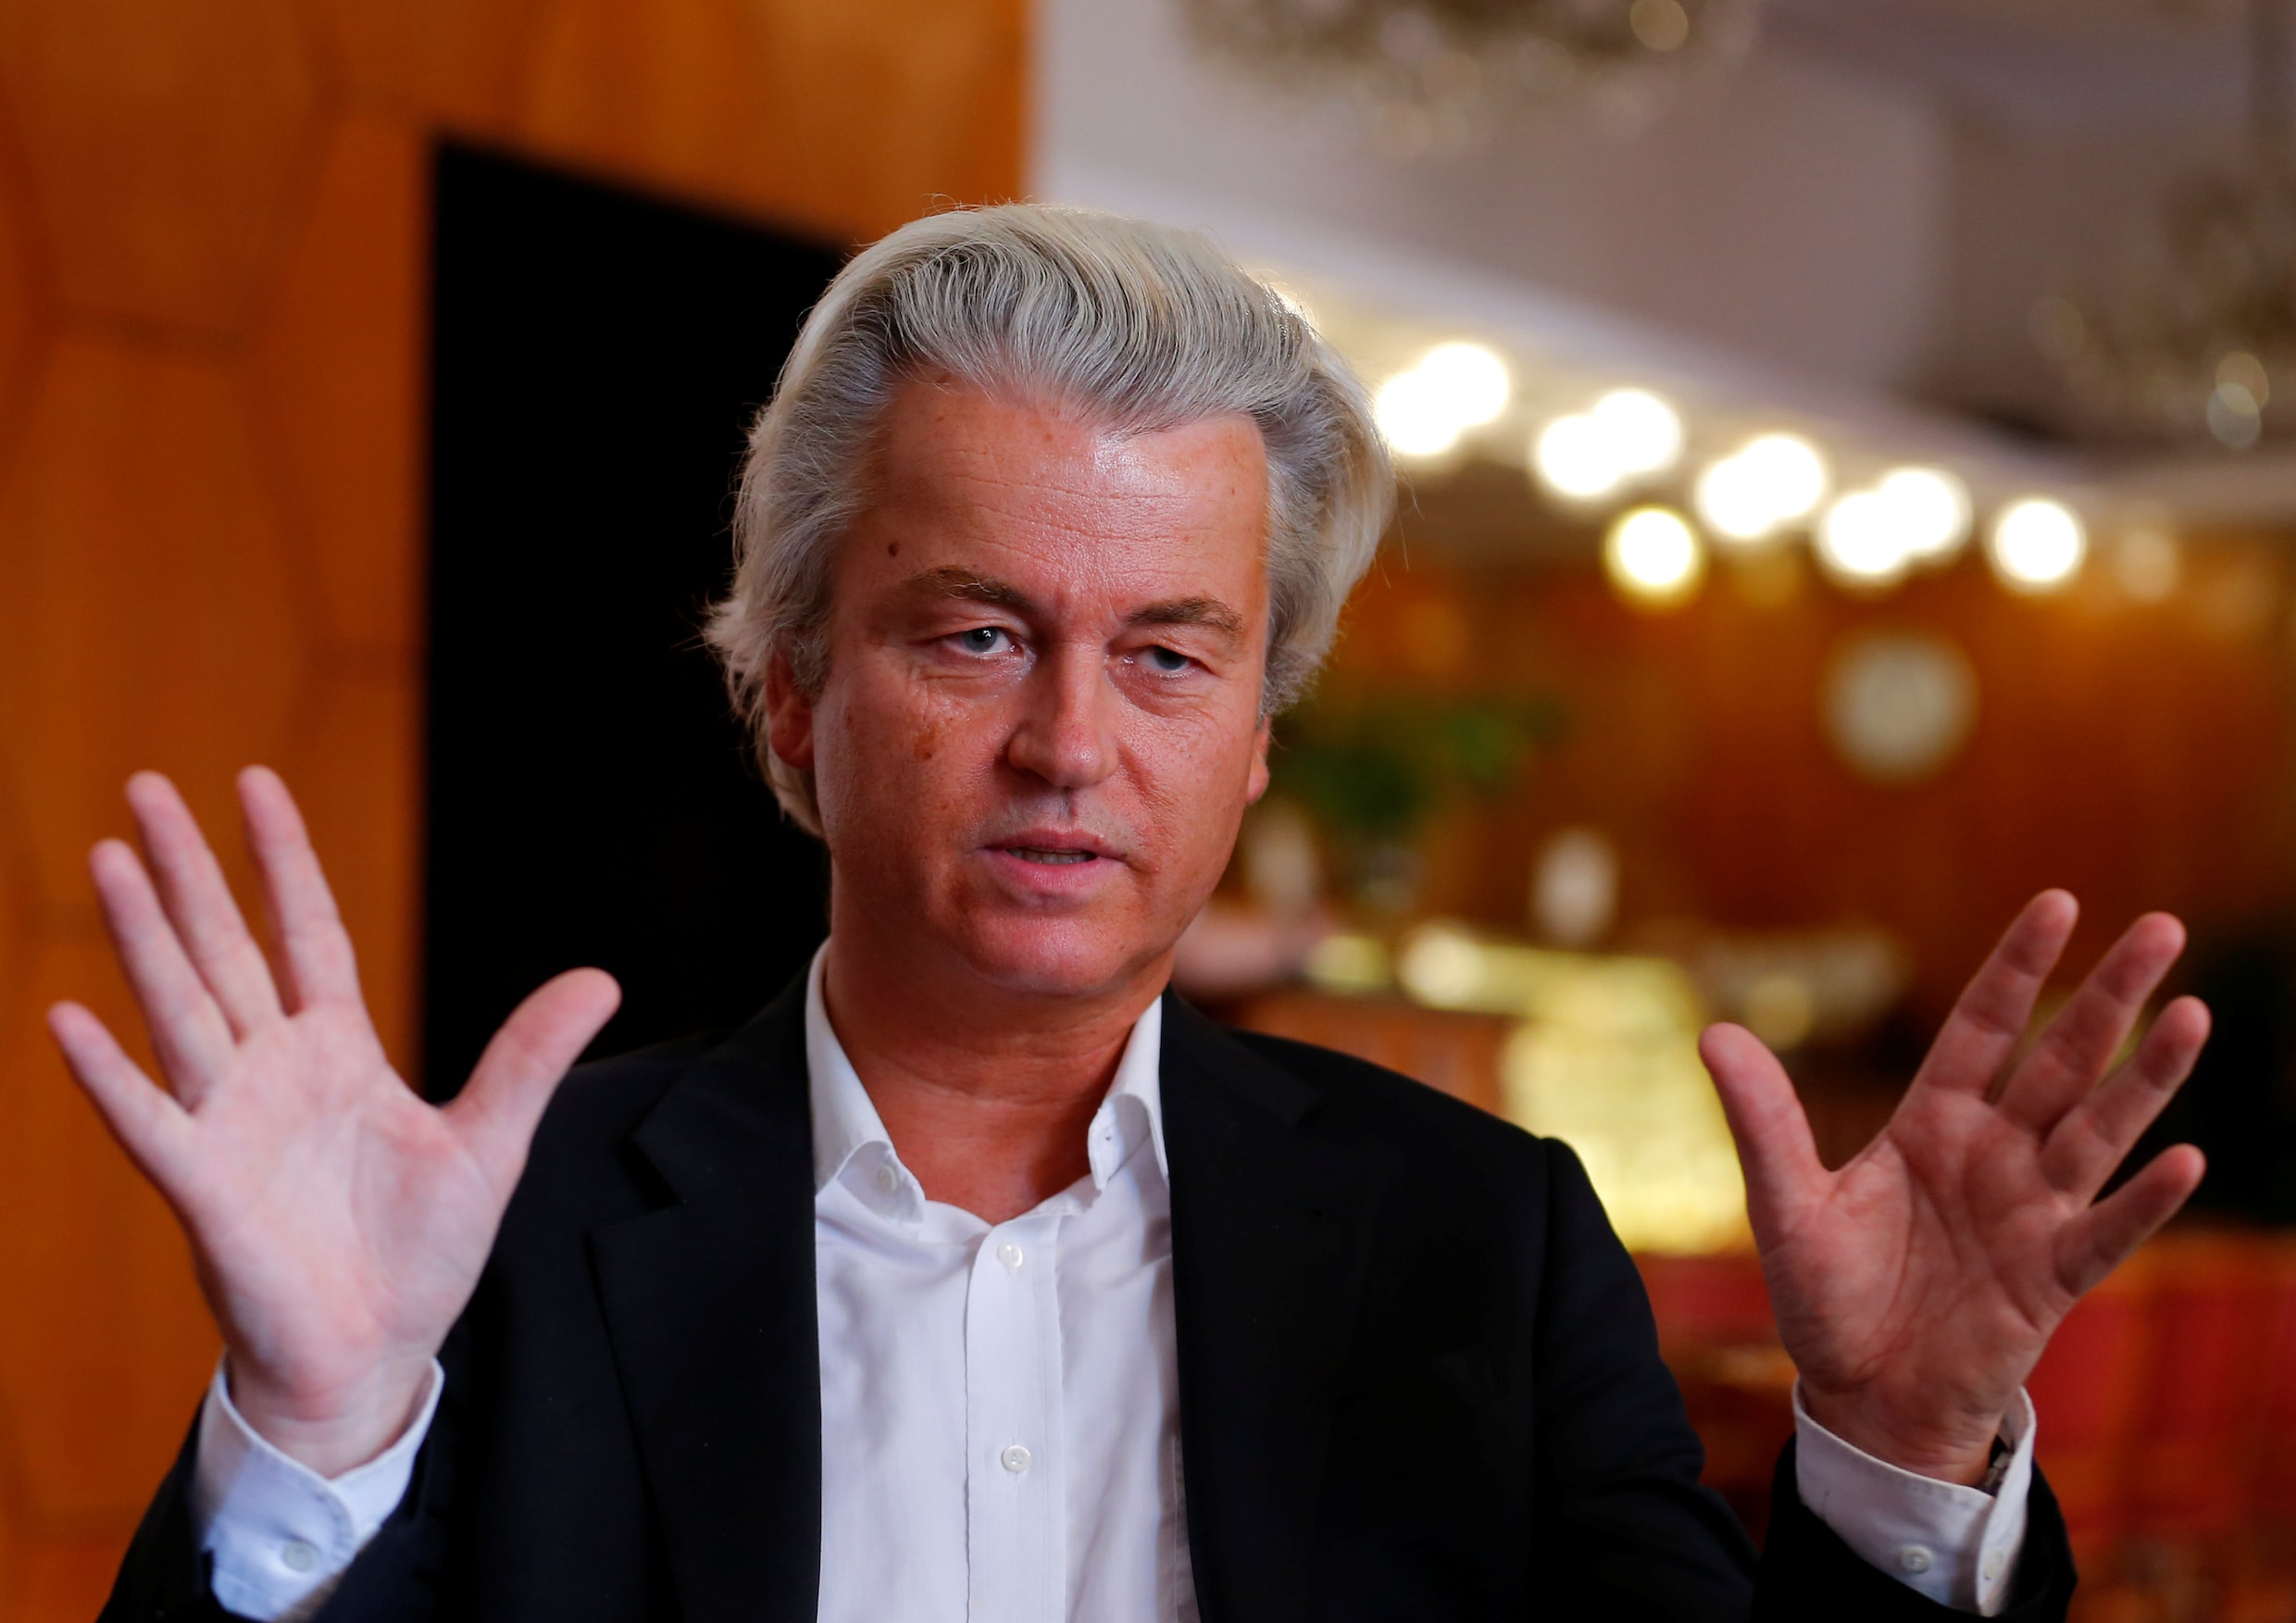 Geert Wilders wil Nederland "de-islamiseren" met partijprogramma van één A4'tje